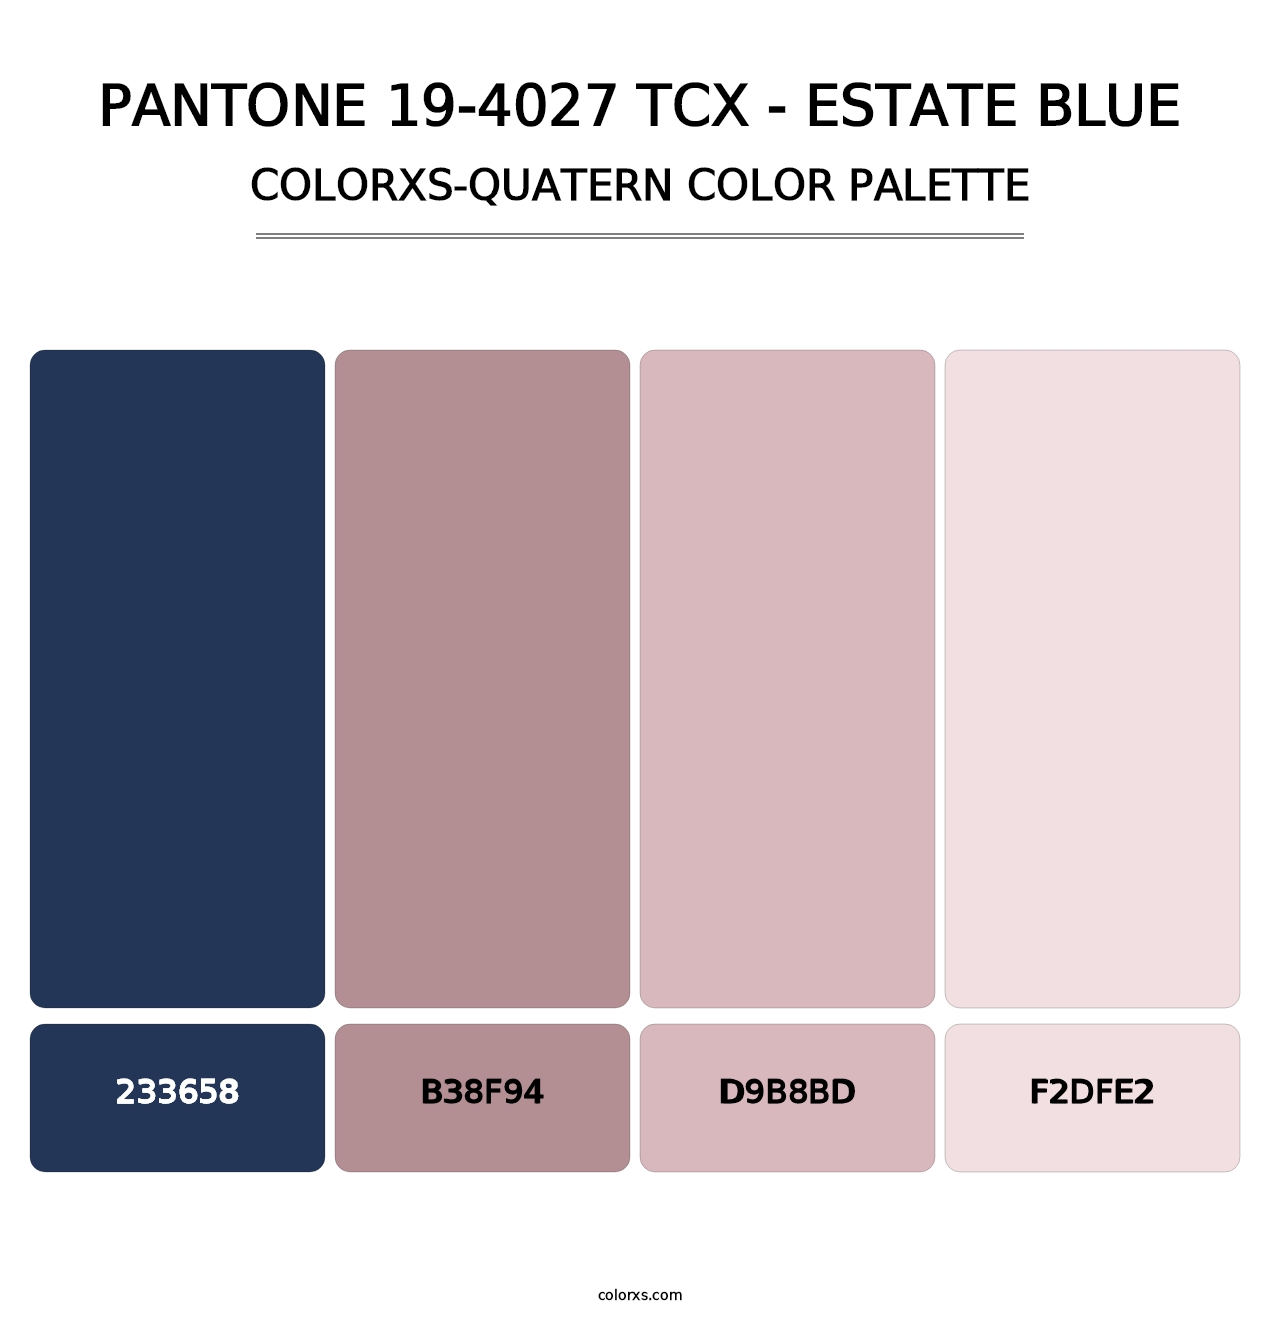 PANTONE 19-4027 TCX - Estate Blue - Colorxs Quatern Palette